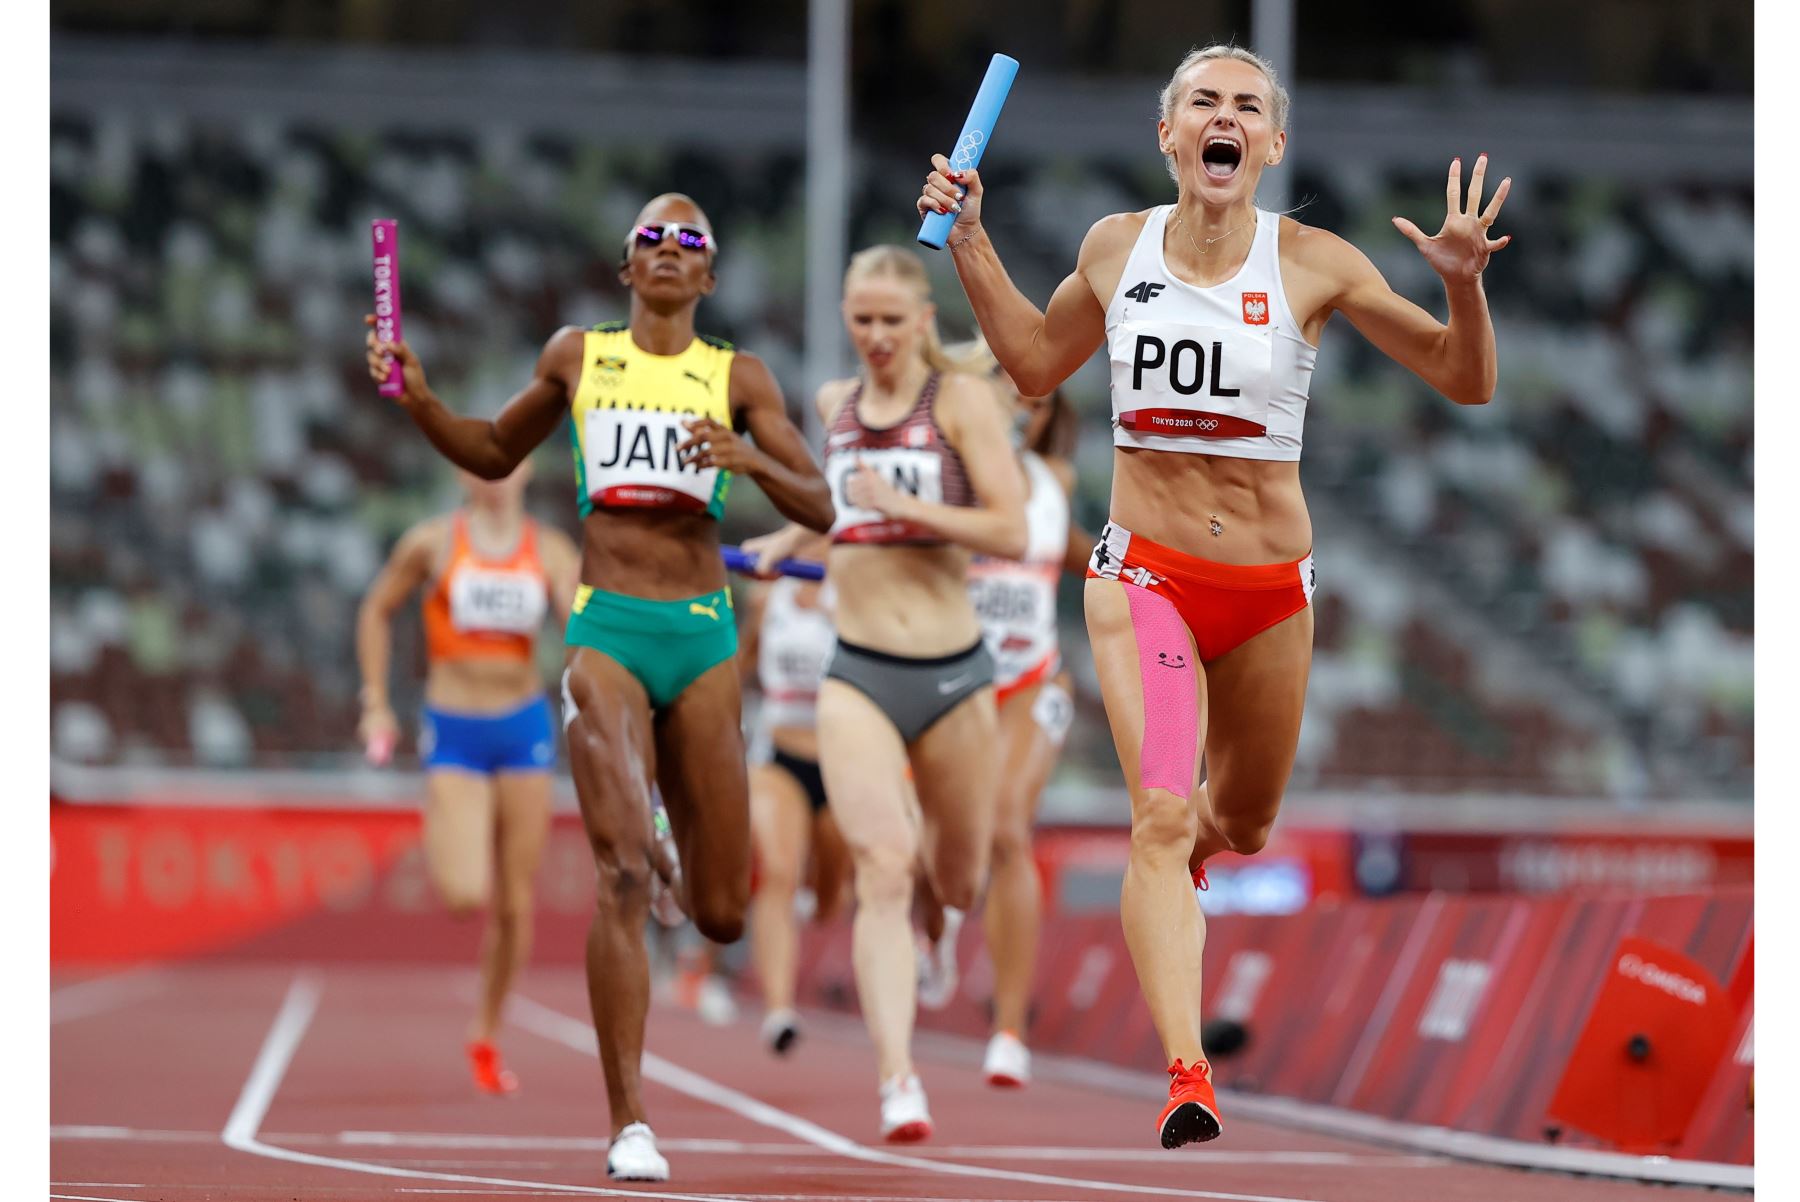 ustyna Swiety-Ersetic del Equipo Polonia reacciona al cruzar la línea de meta al ganar la medalla de plata en la final femenina de relevos 4 x 400m durante las pruebas de Atletismo de Tokio 2020. Foto: EFE